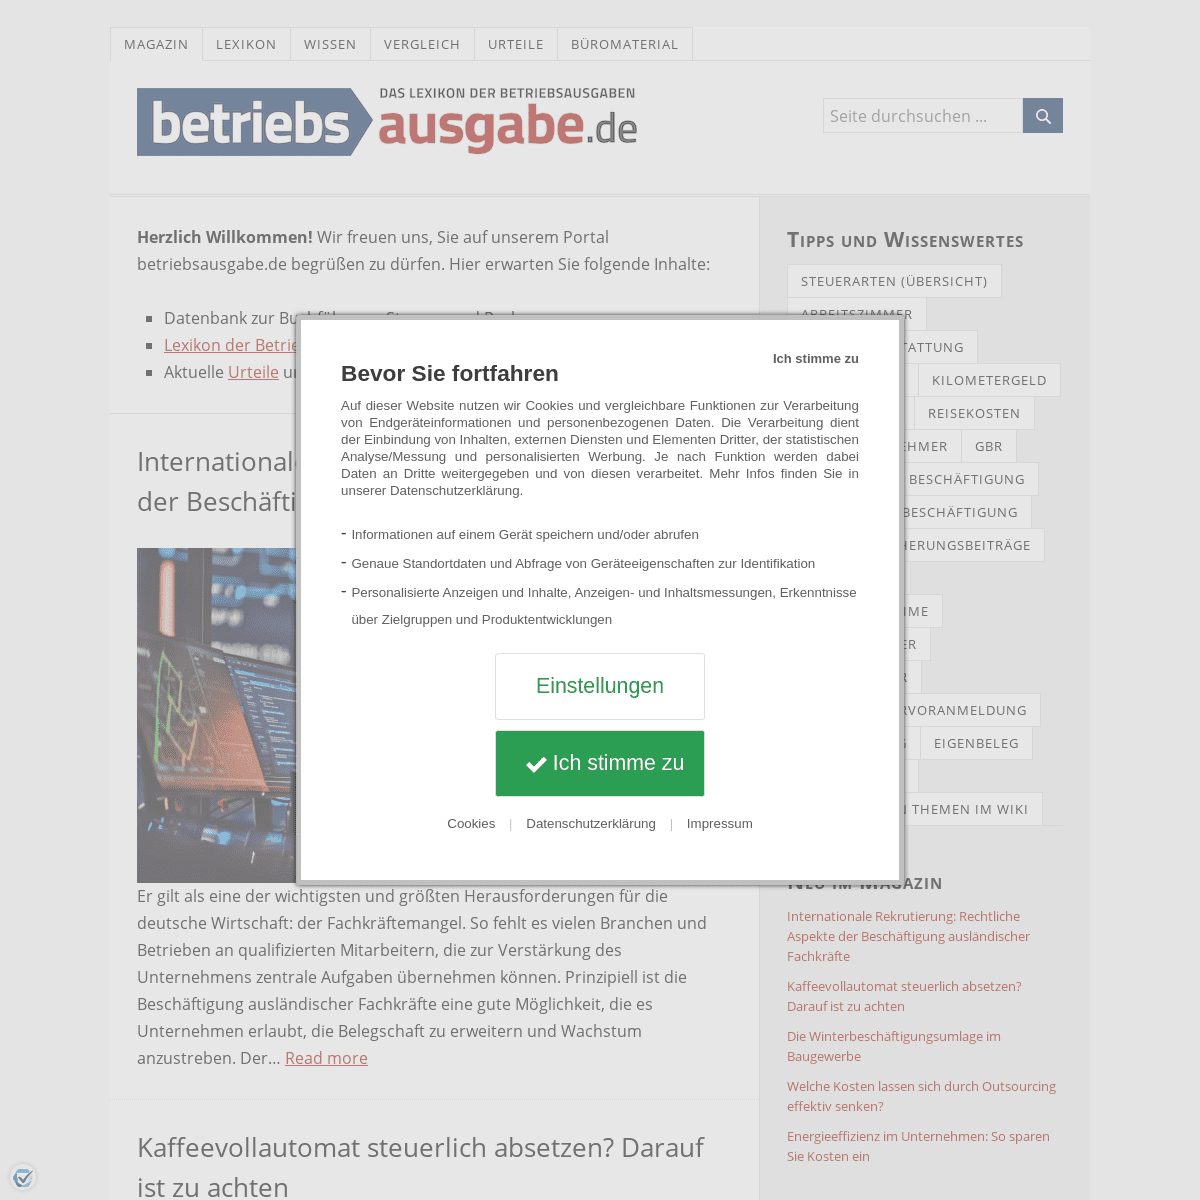 A complete backup of https://betriebsausgabe.de